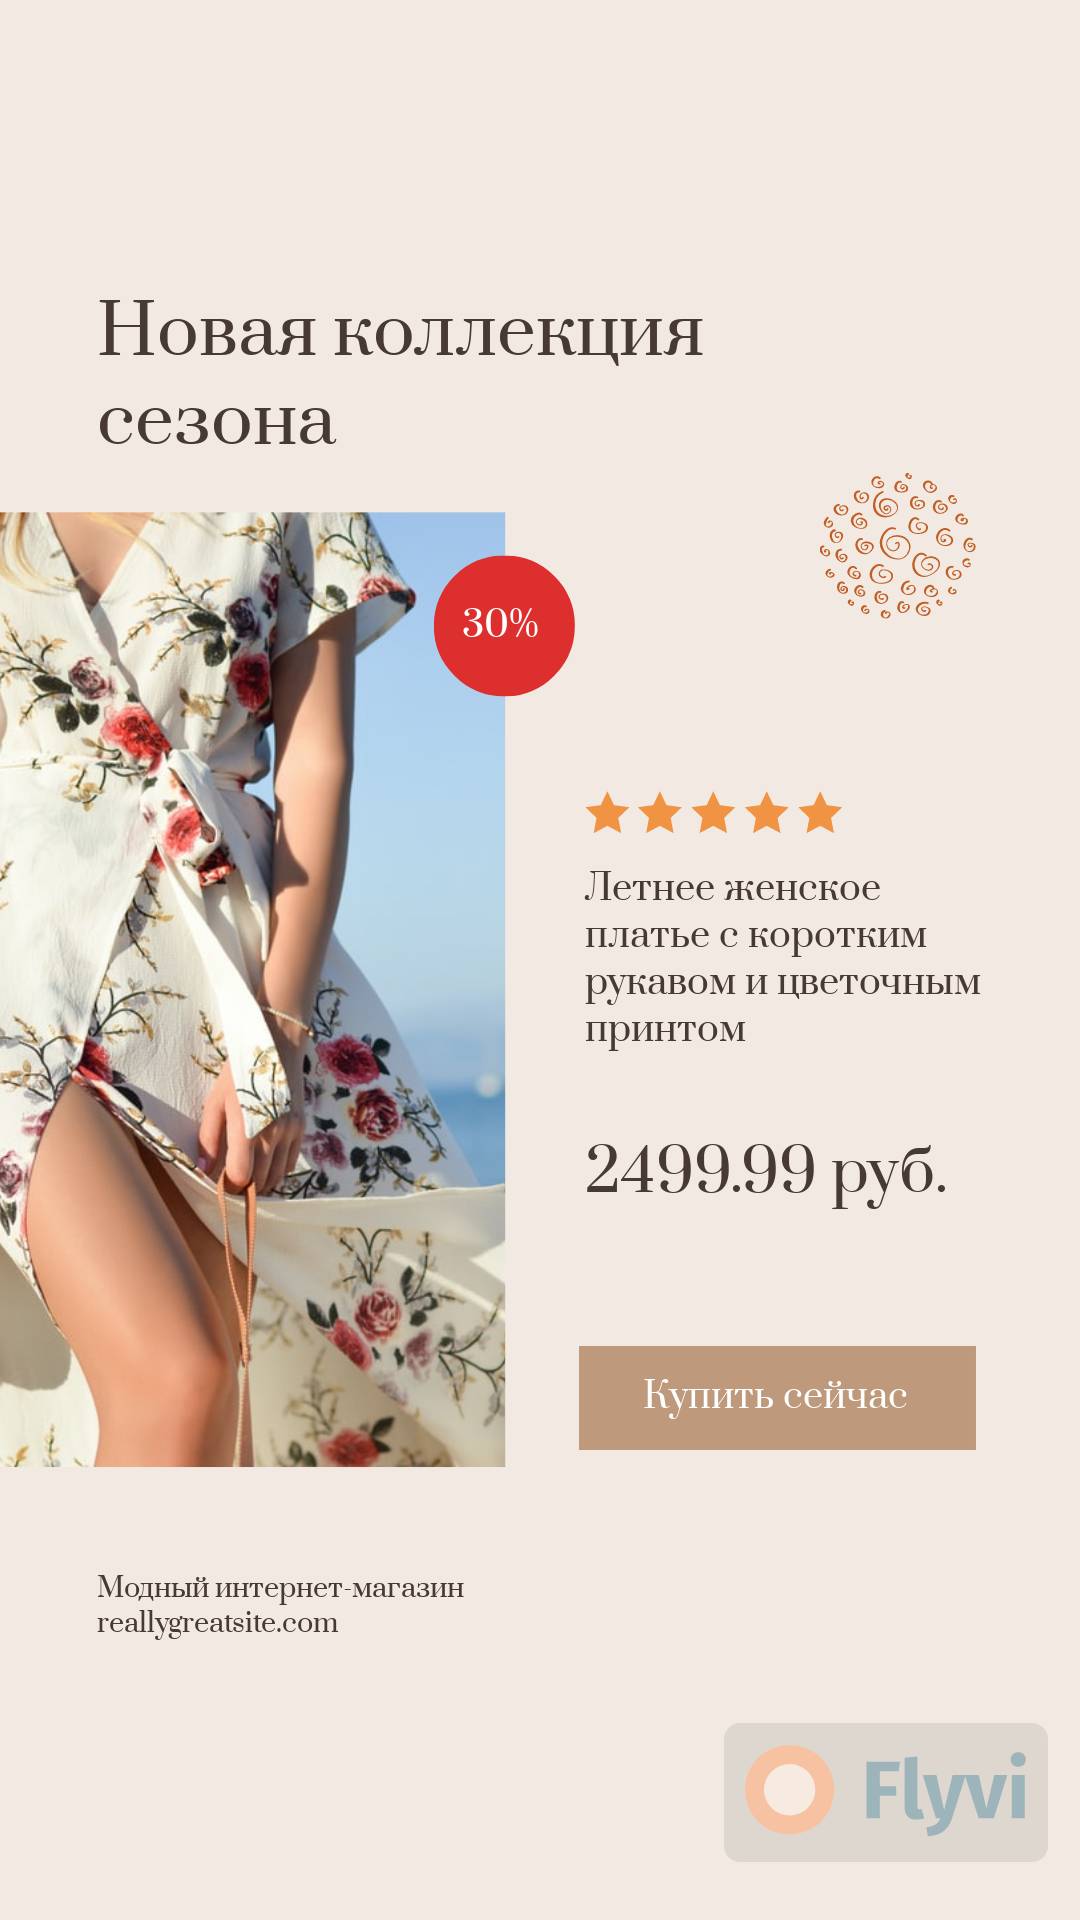 Нежная кремовая story для рекламы модного интернет-магазина женской одежды с фото моделей ценой и кнопкой перехода